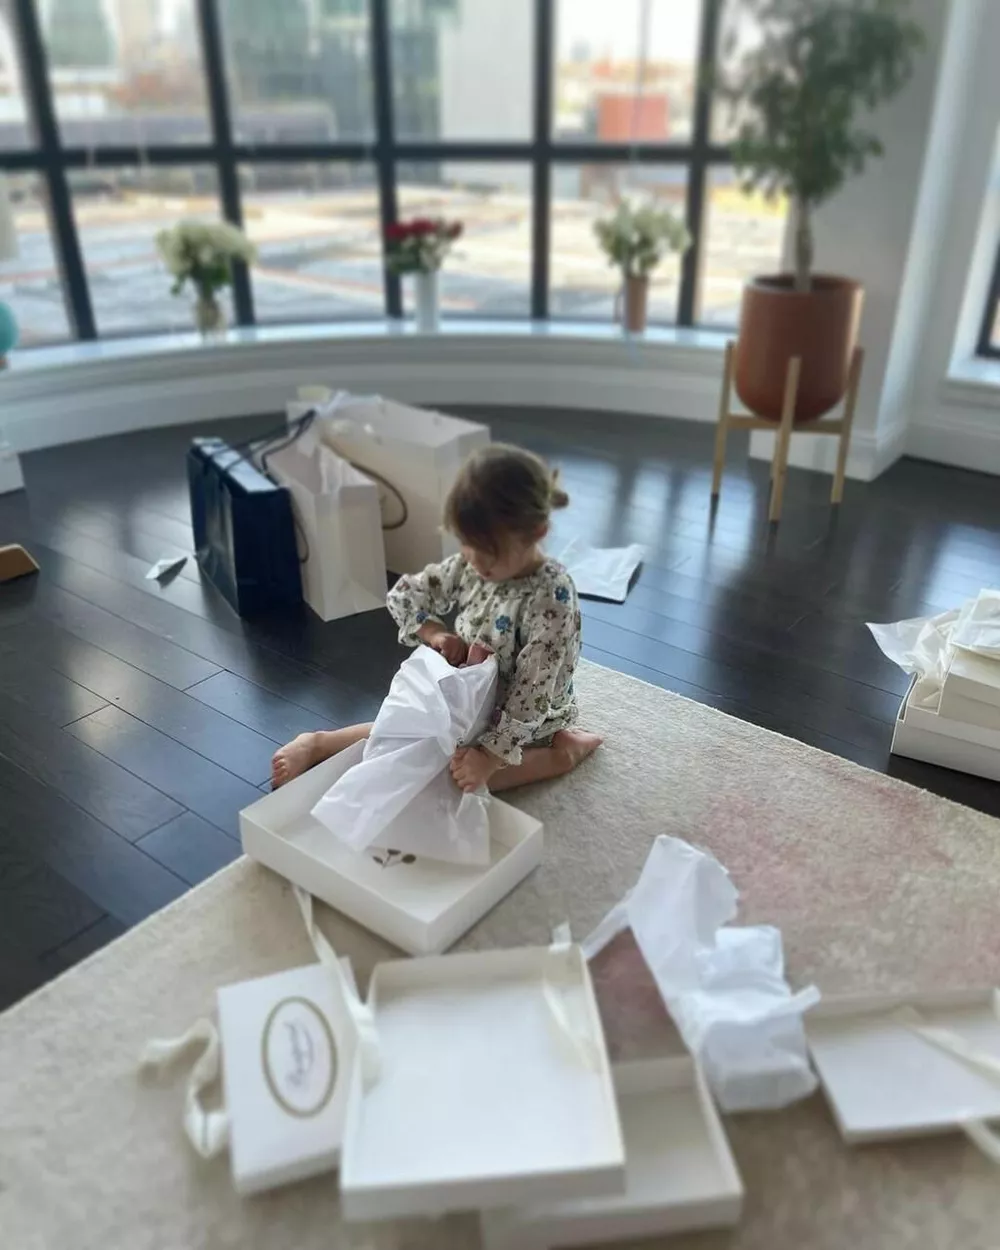 Данила Козловский опубликовал редкие снимки дочери в честь ее третьего дня рождения